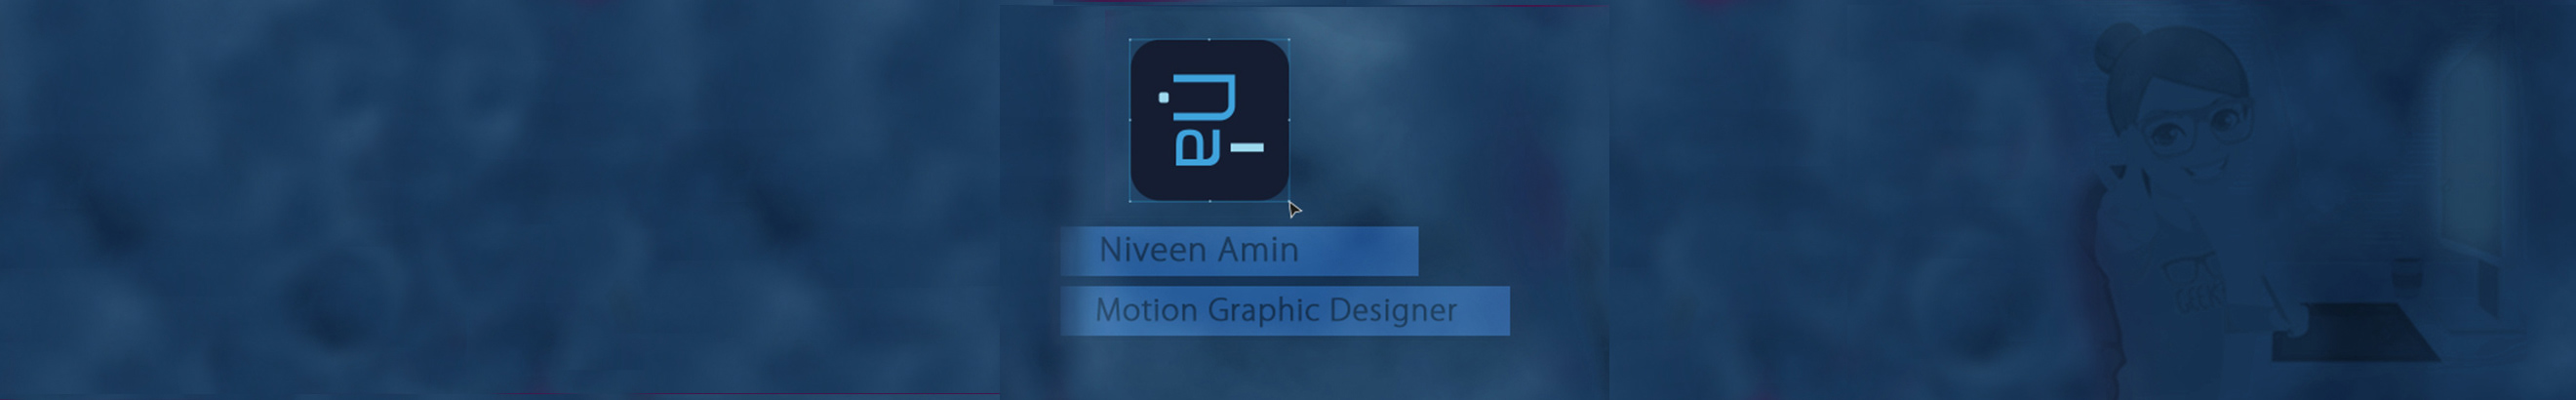 Banner de perfil de Niveen Amin